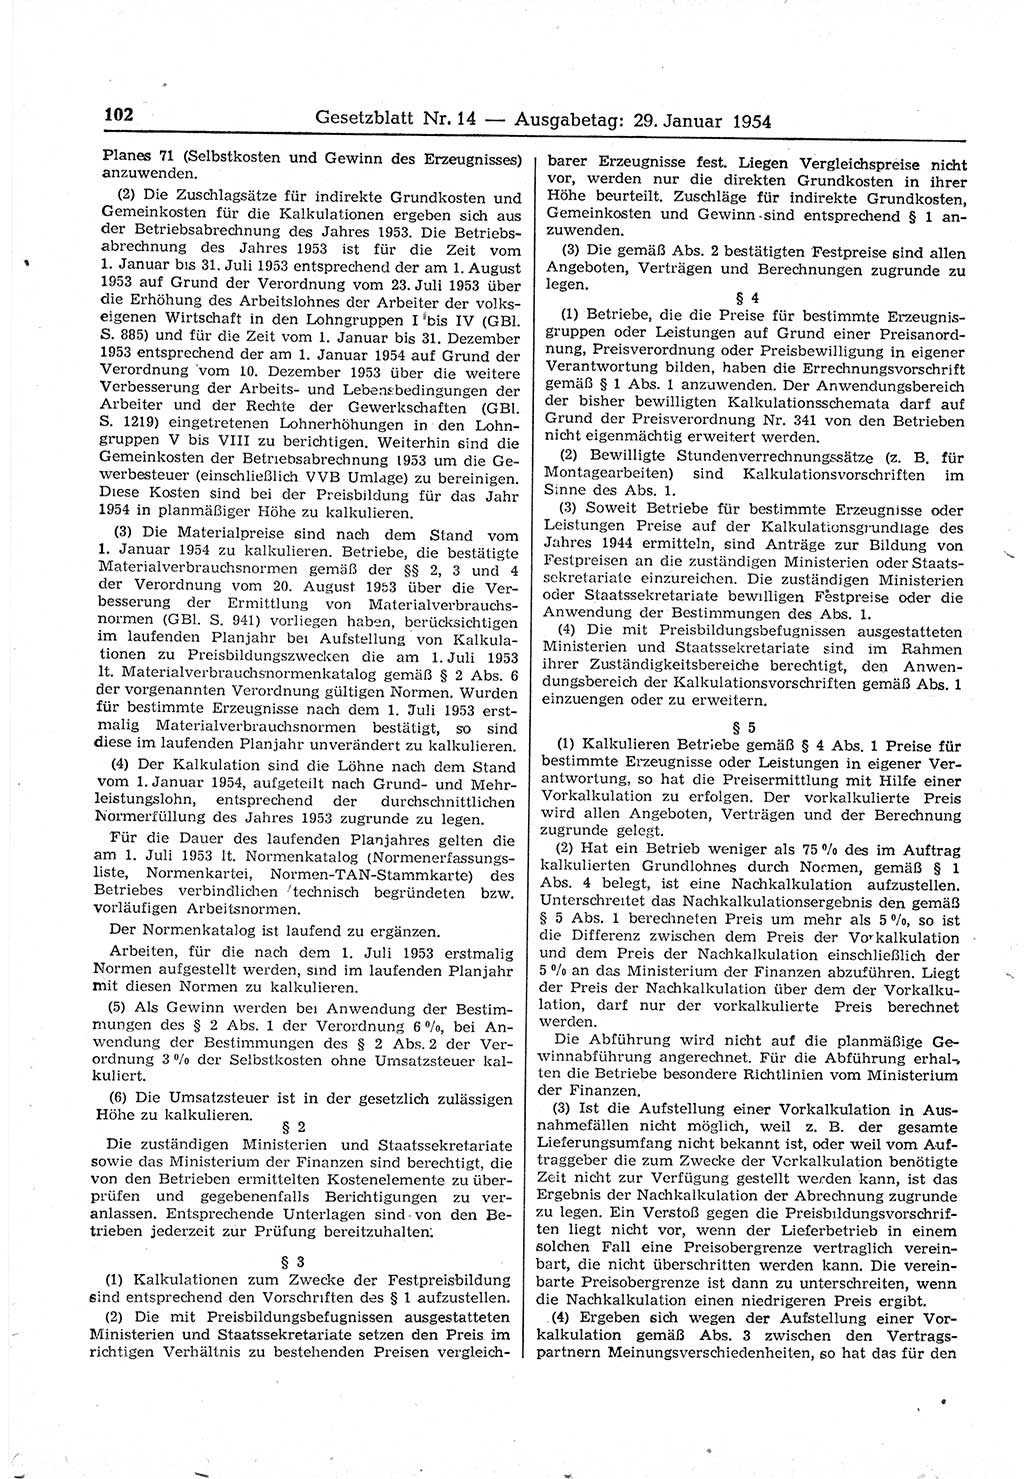 Gesetzblatt (GBl.) der Deutschen Demokratischen Republik (DDR) 1954, Seite 102 (GBl. DDR 1954, S. 102)